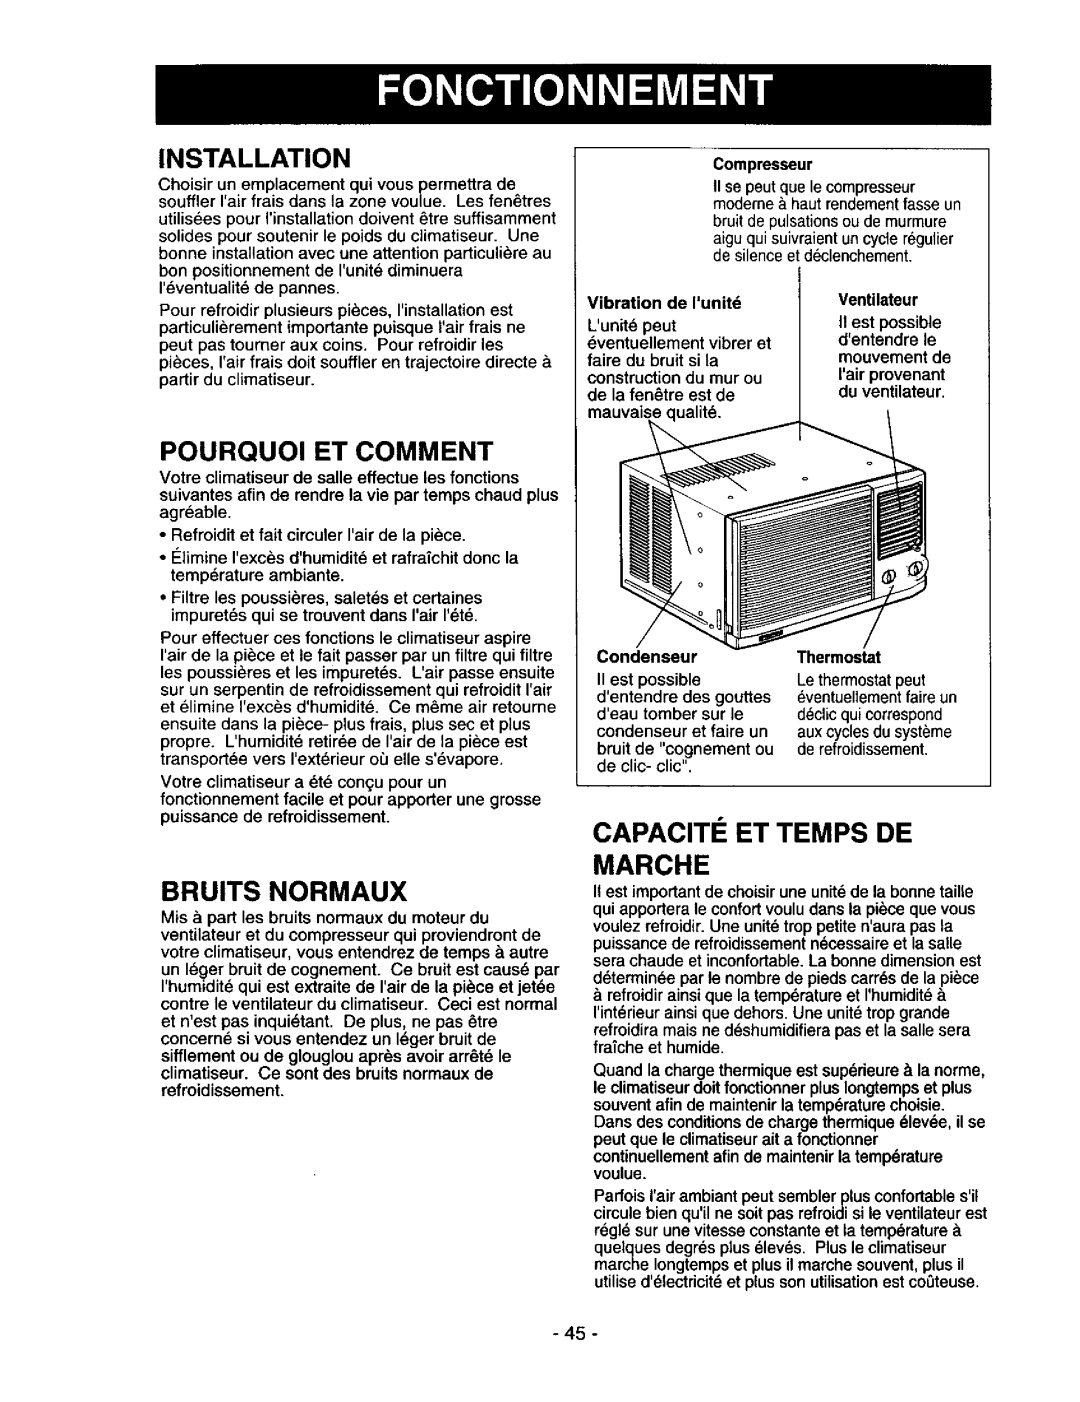 Kenmore 78122 owner manual Marche, Installation, Pourquoi Et Comment, Bruits Normaux, Capaciti Et Temps De 